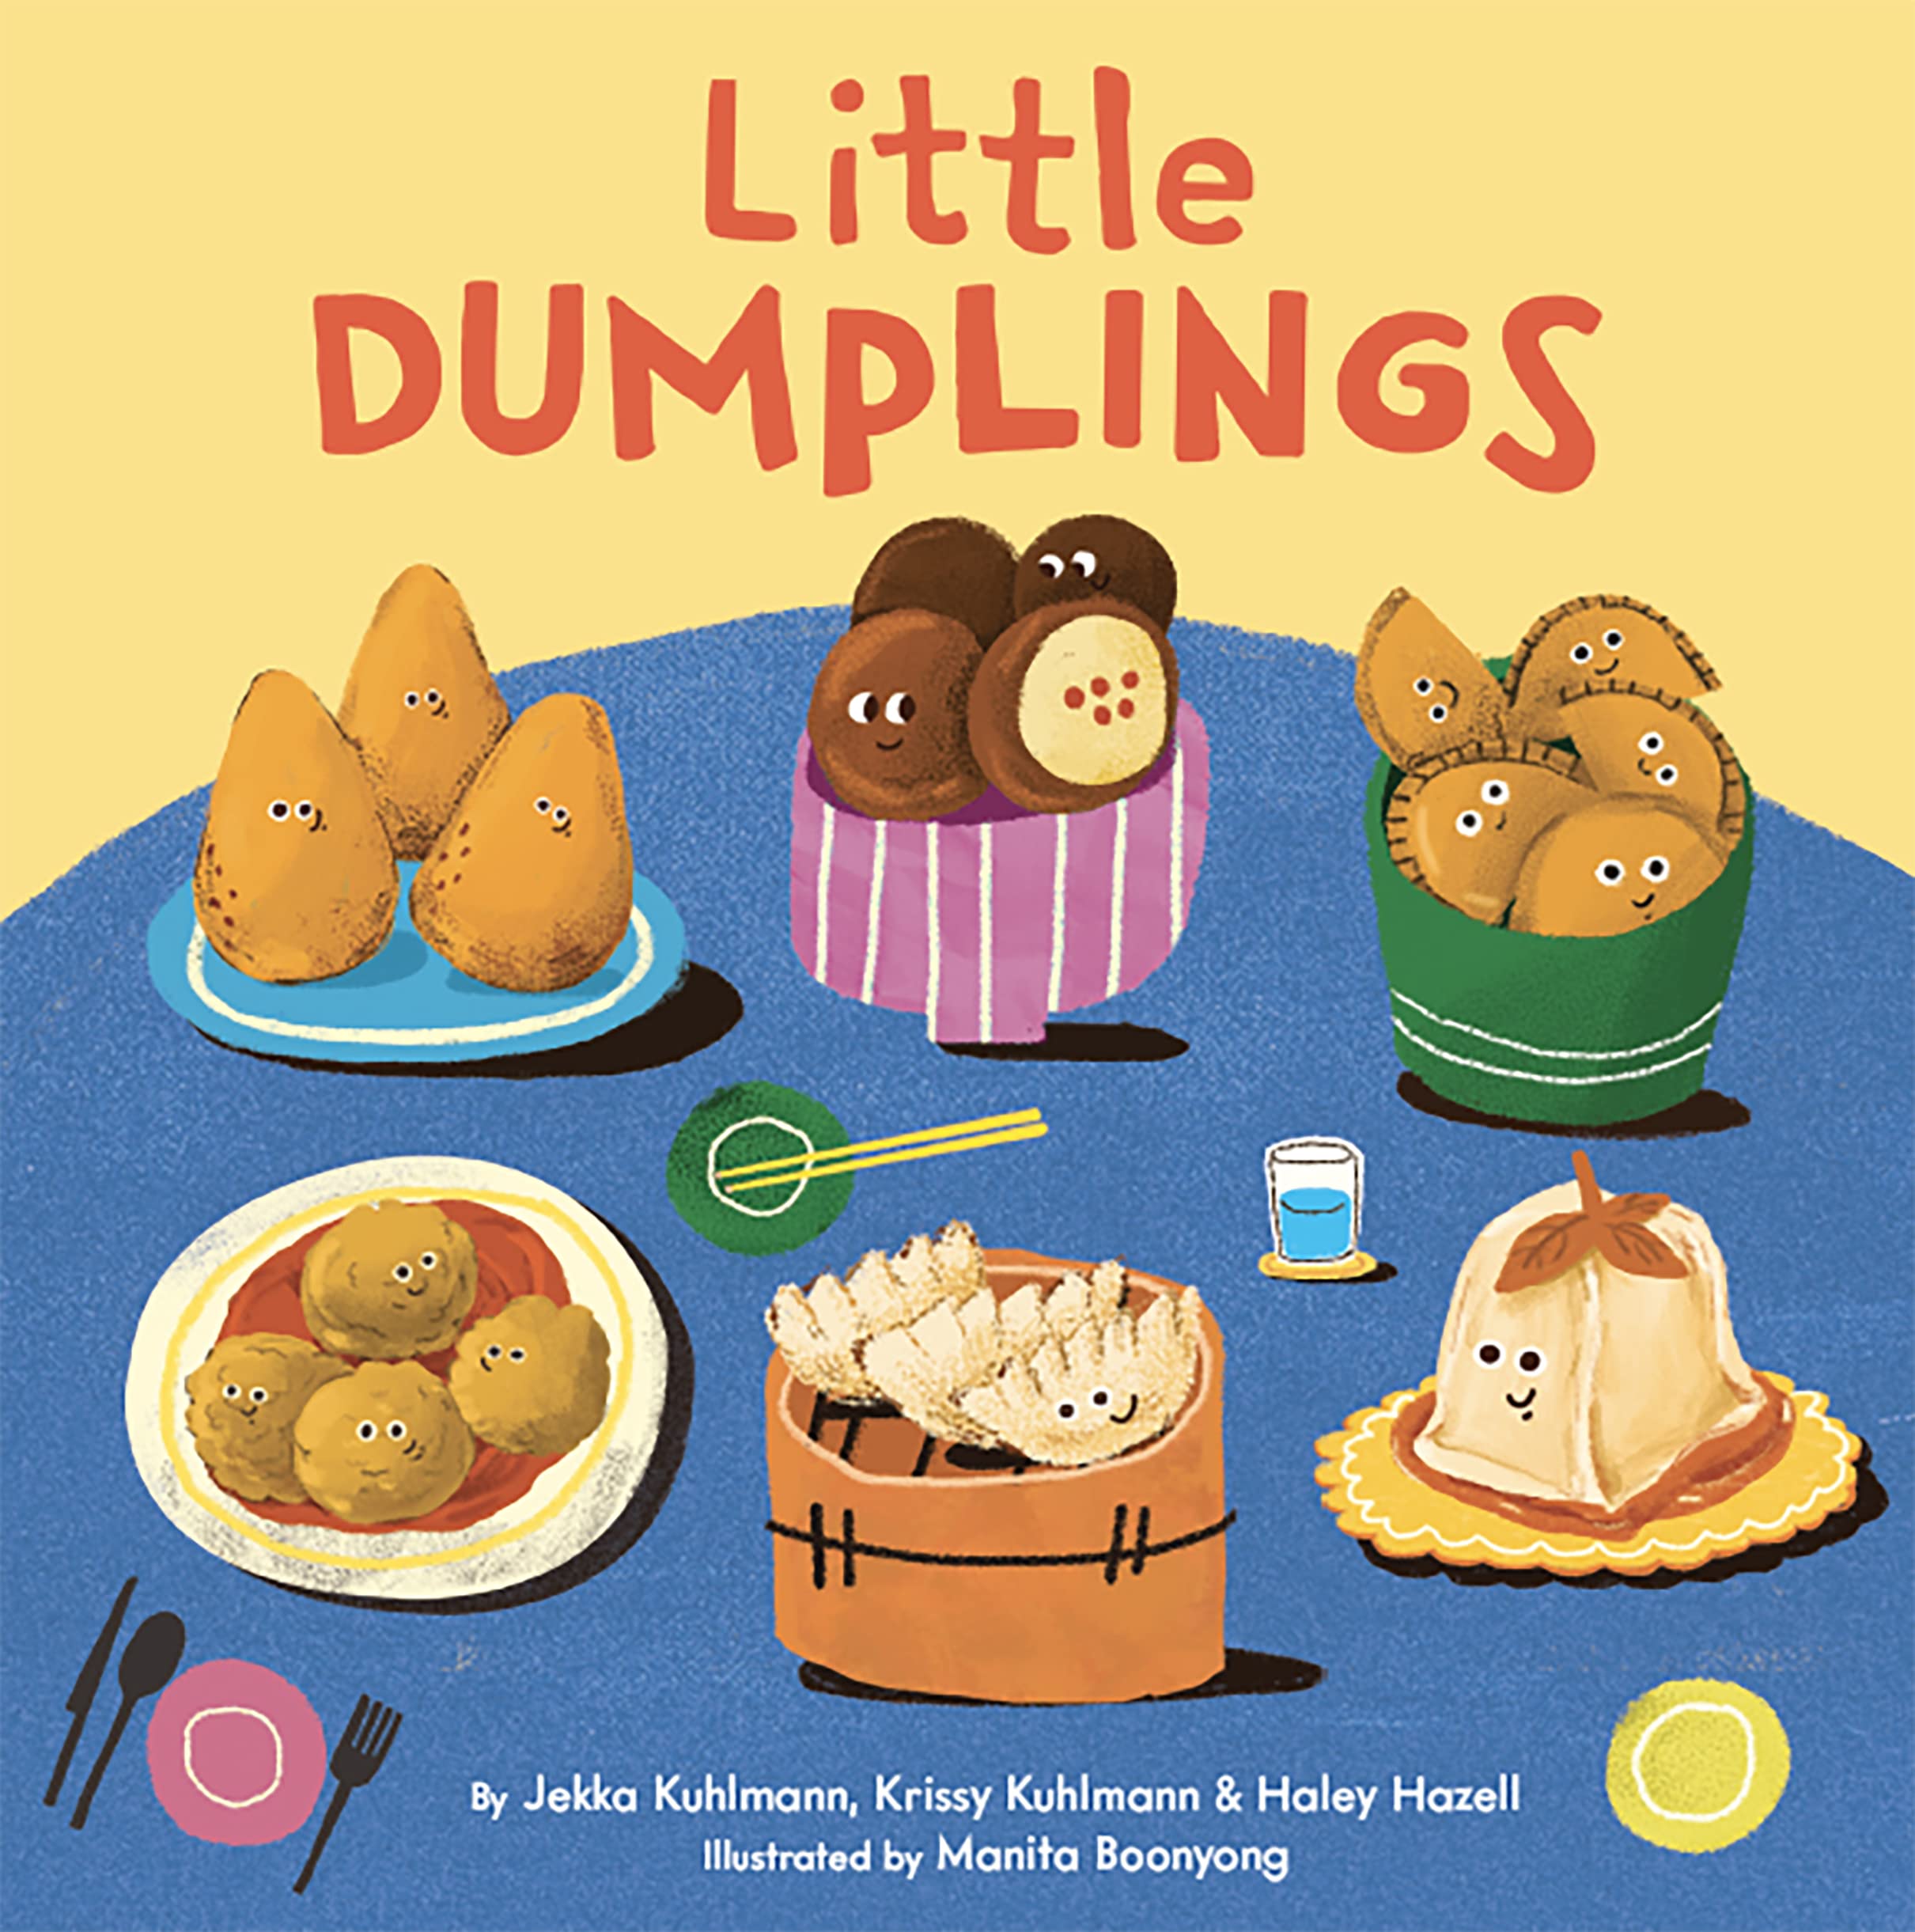 Little Dumplings (Jekka Kuhlmann, Krissy Kuhlmann, Haley Hazell, Manita Boonyong)